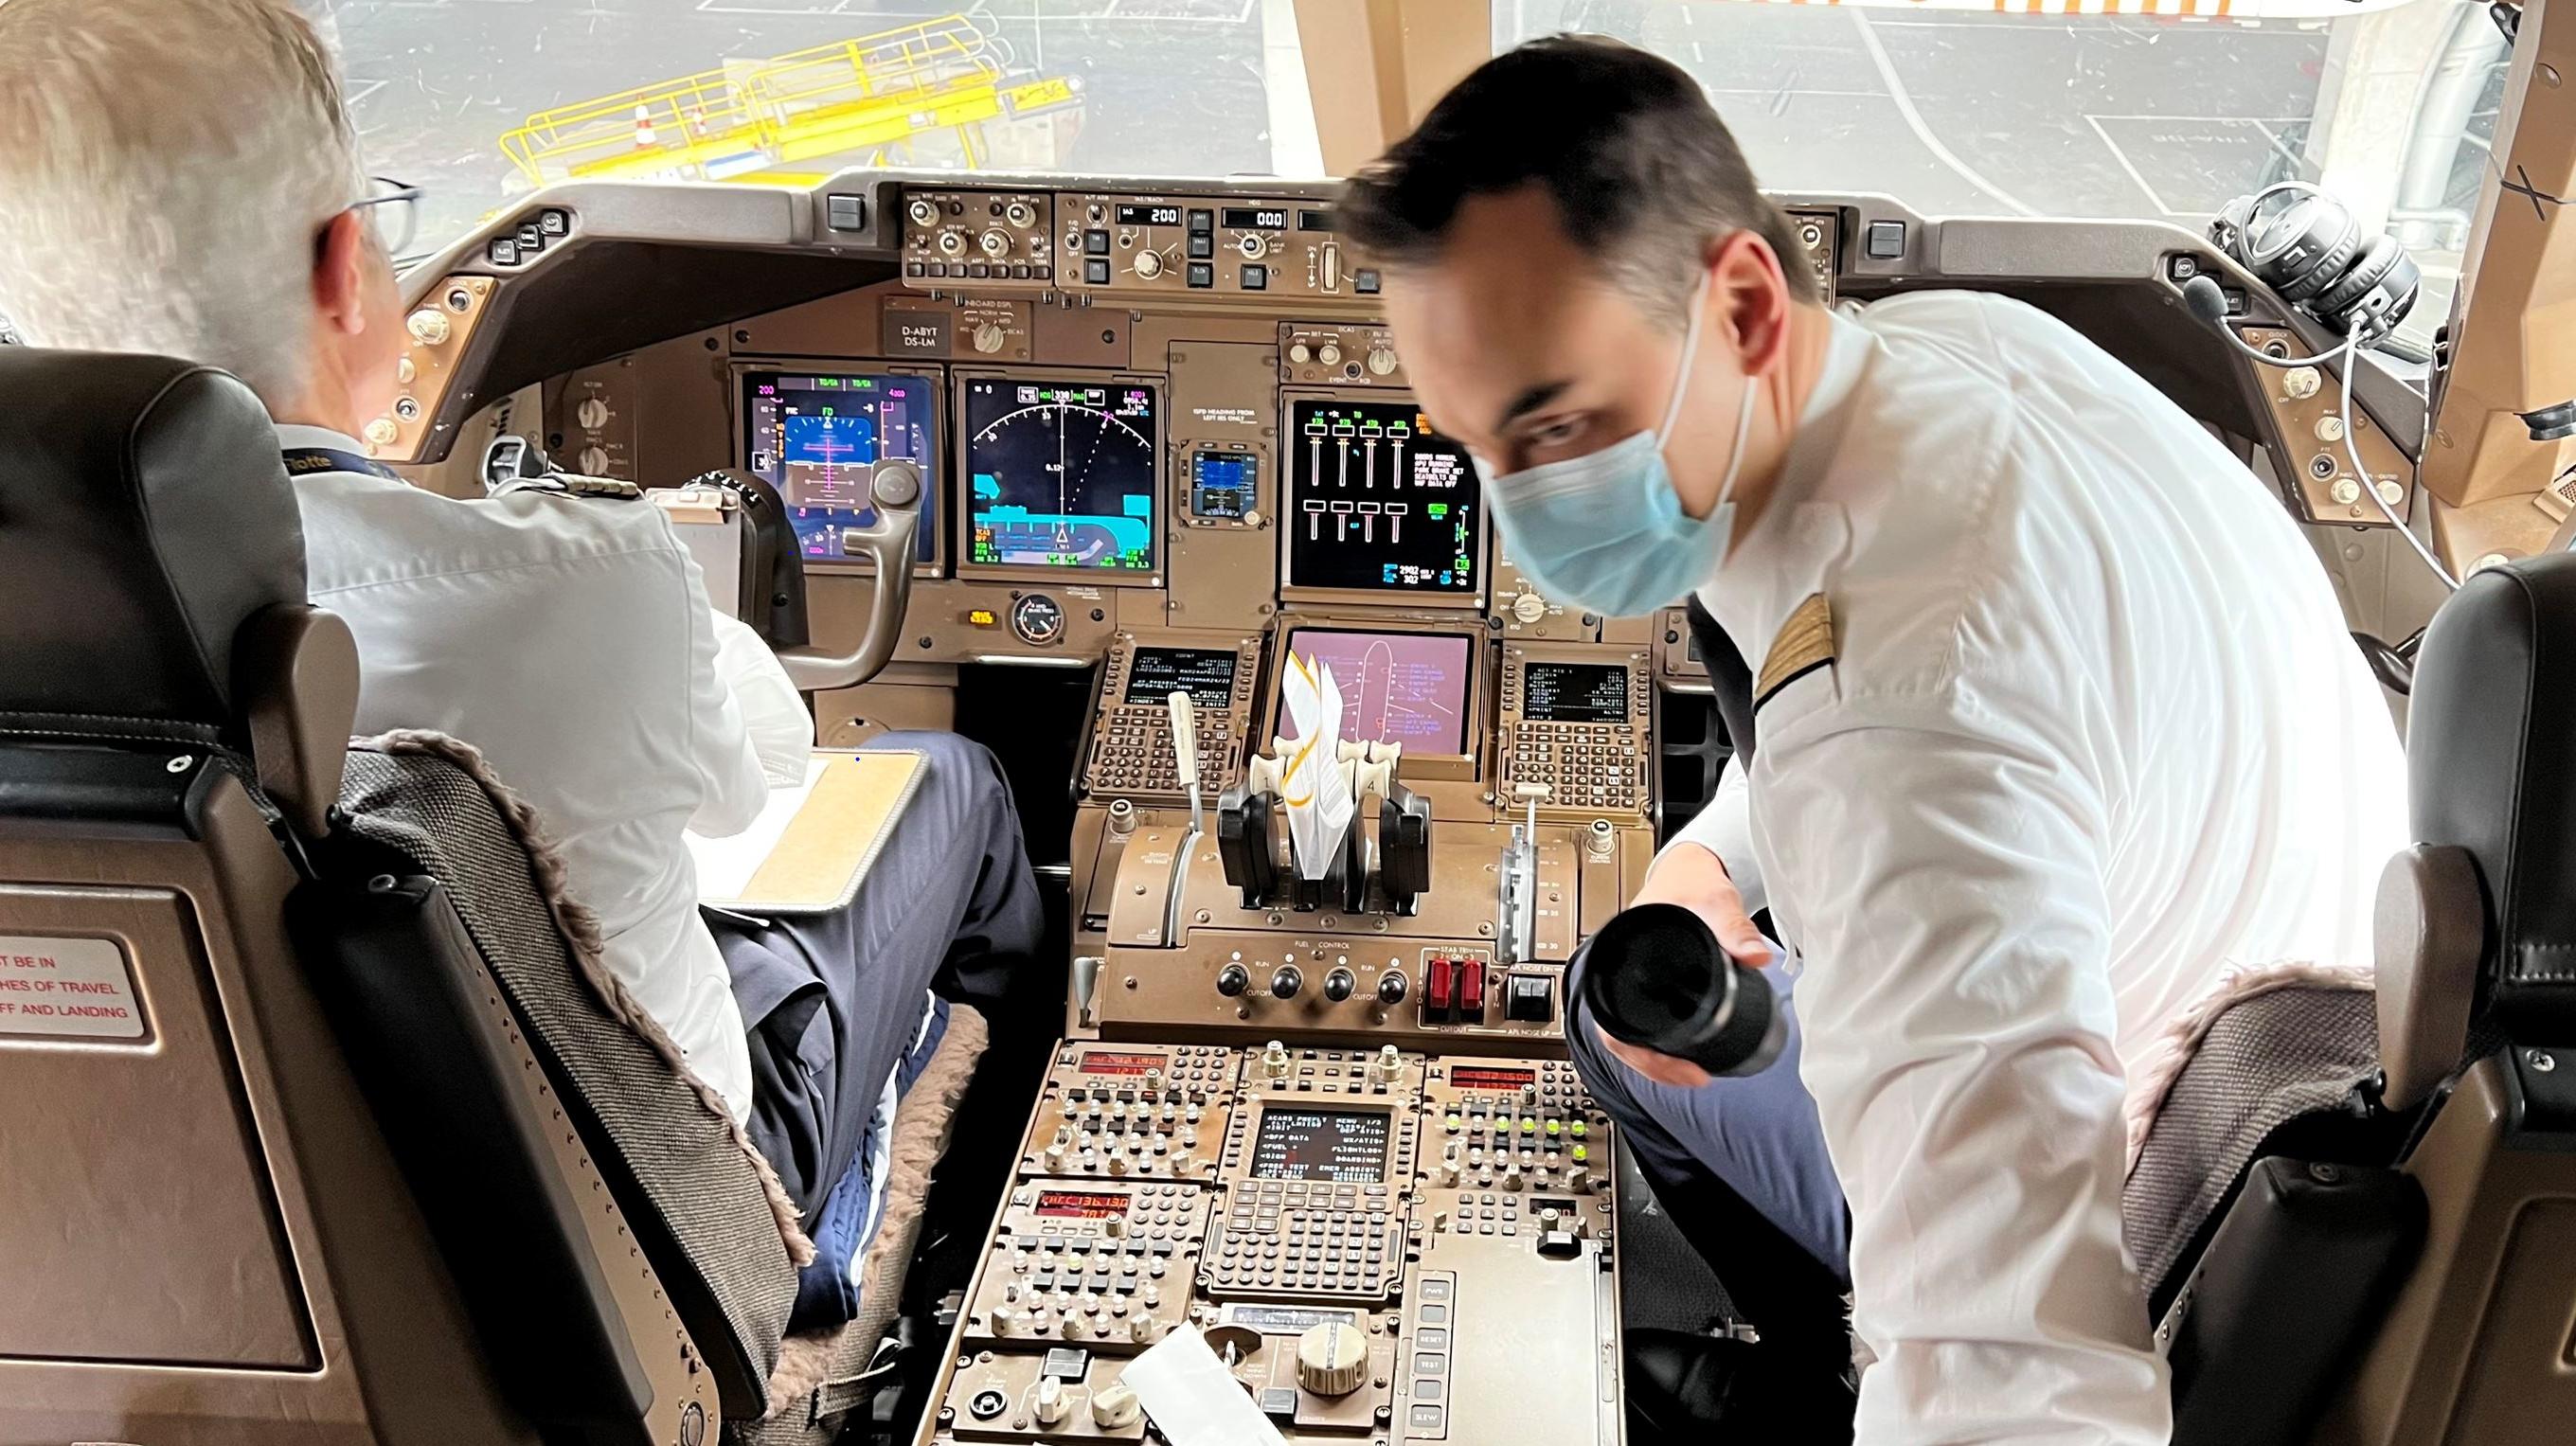 "Ready for Takeoff" - Kapitän und First Officer sind startklar, um die RTL.news-Gewinner und alle anderen Passagiere in der Boeing 747 von Frankfurt nach Mallorca zu bringen.